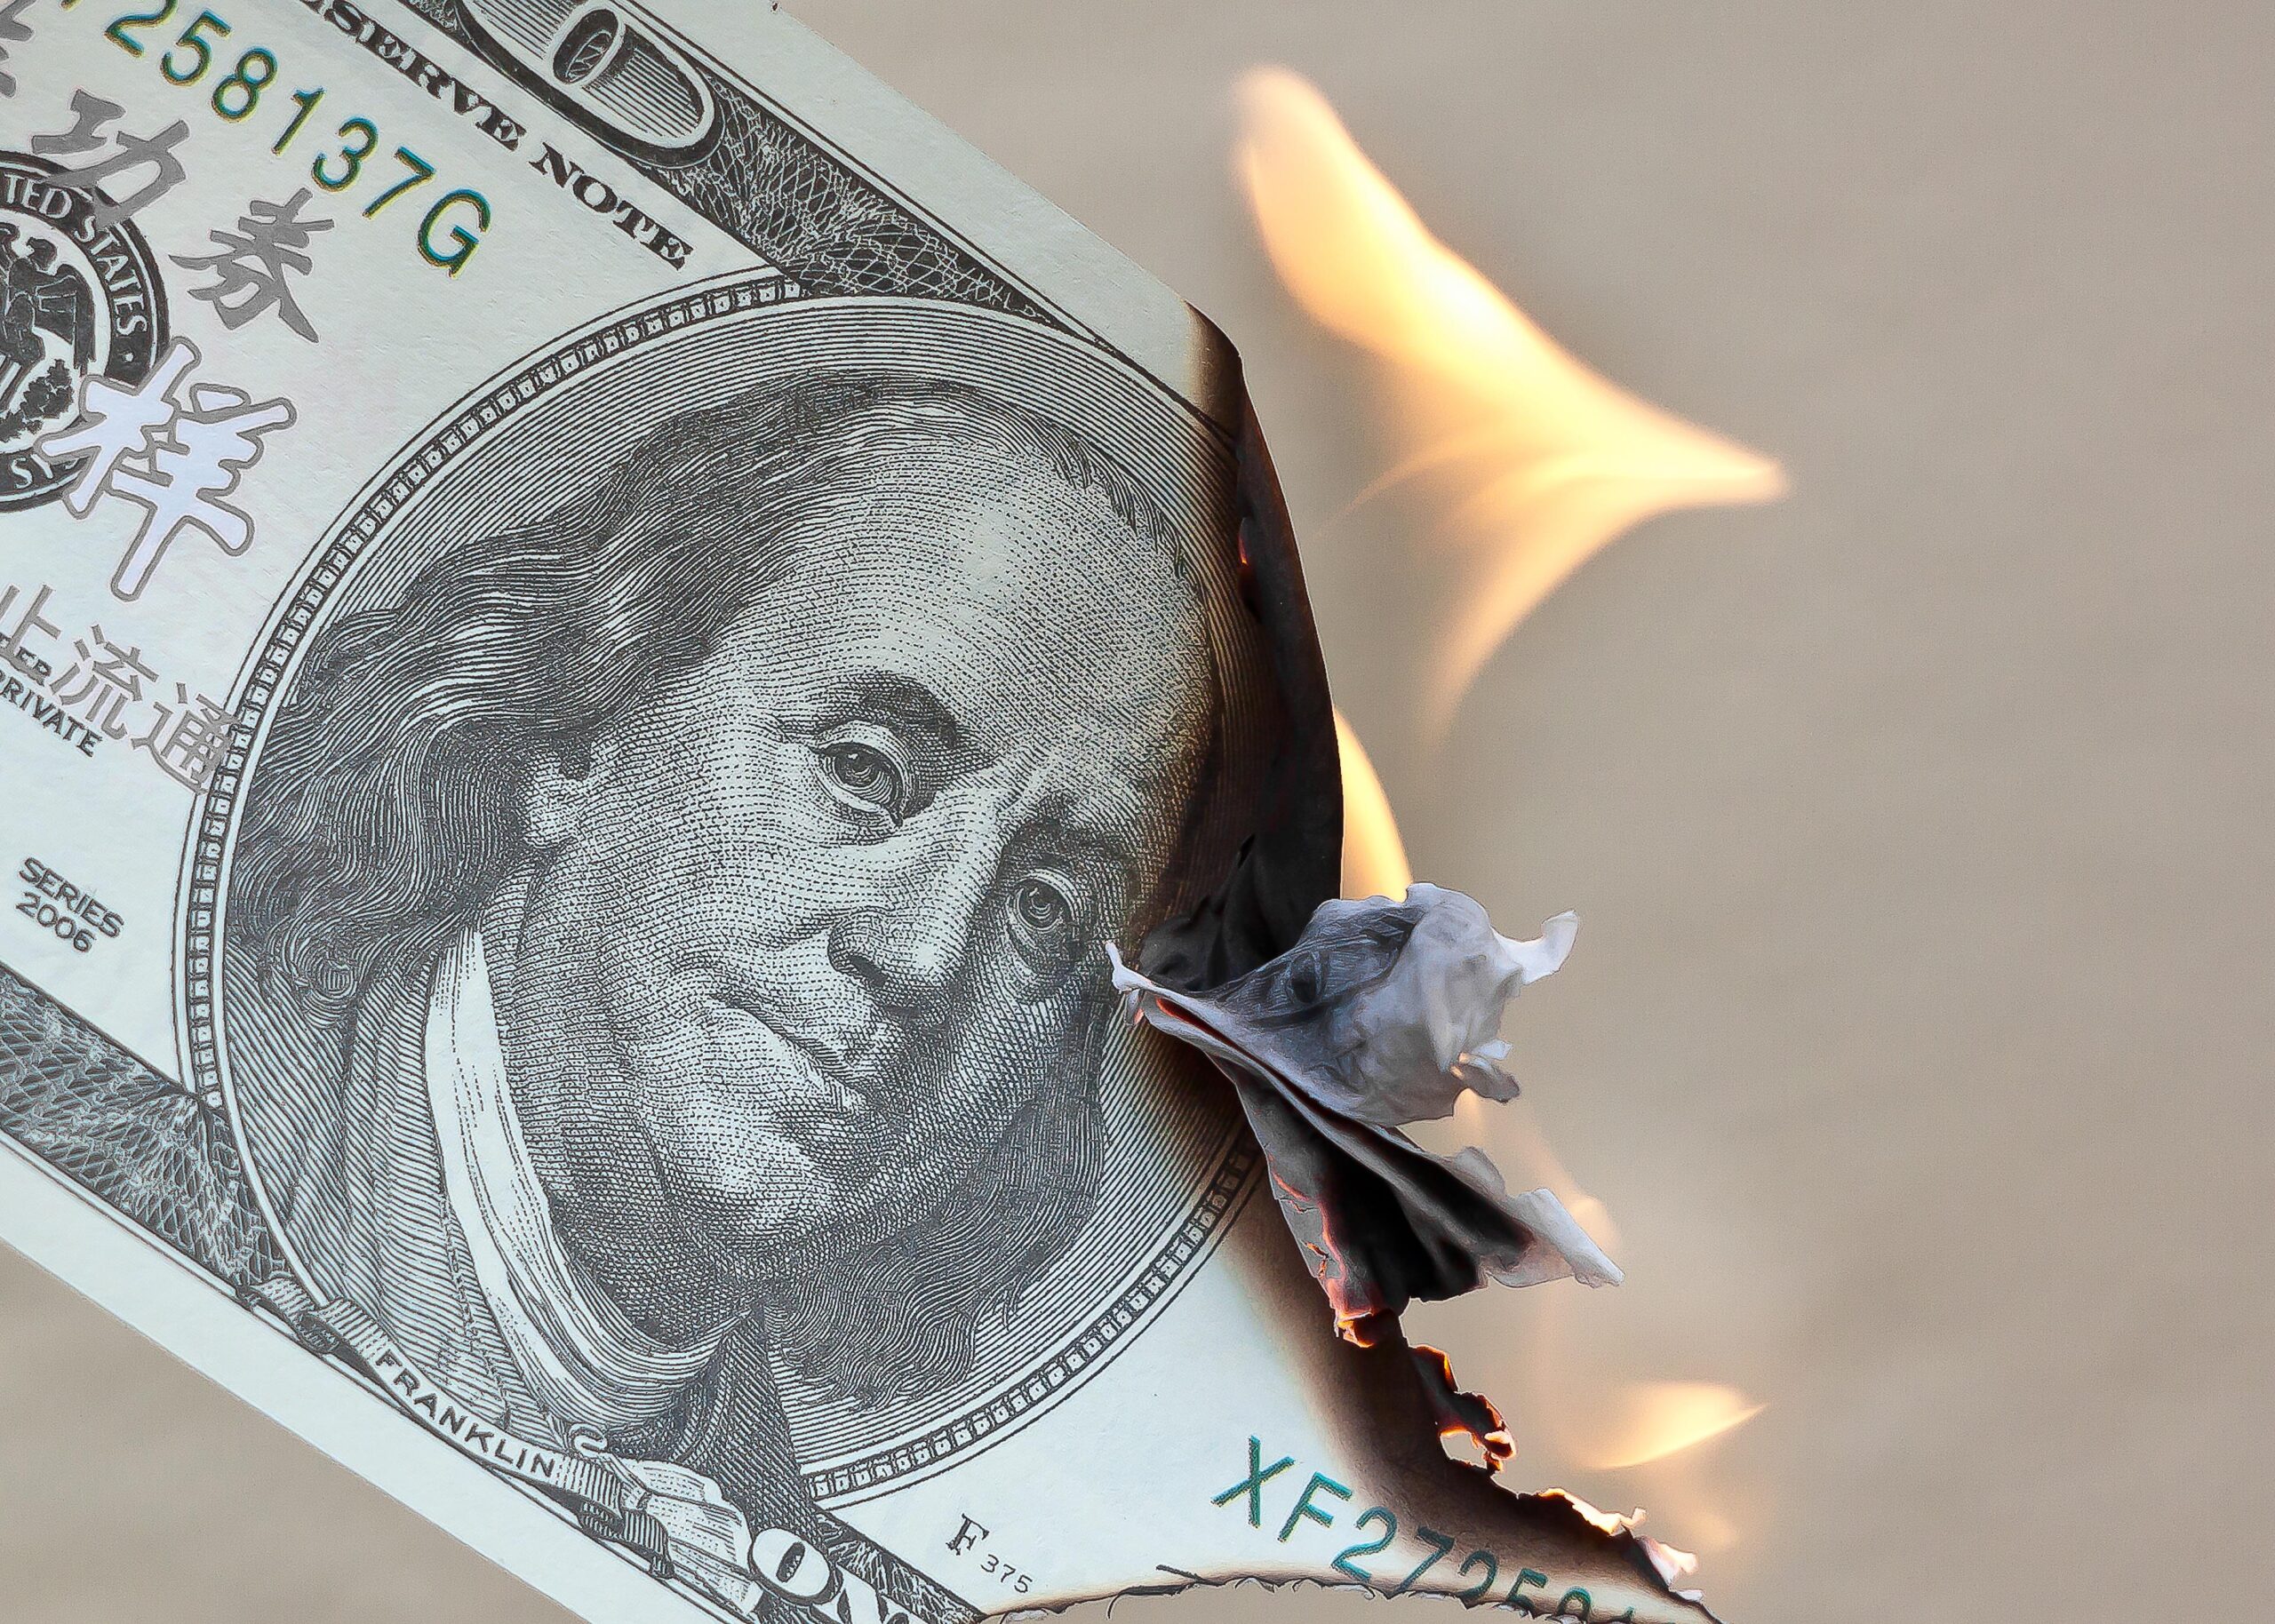 A hundred dollar bill burning